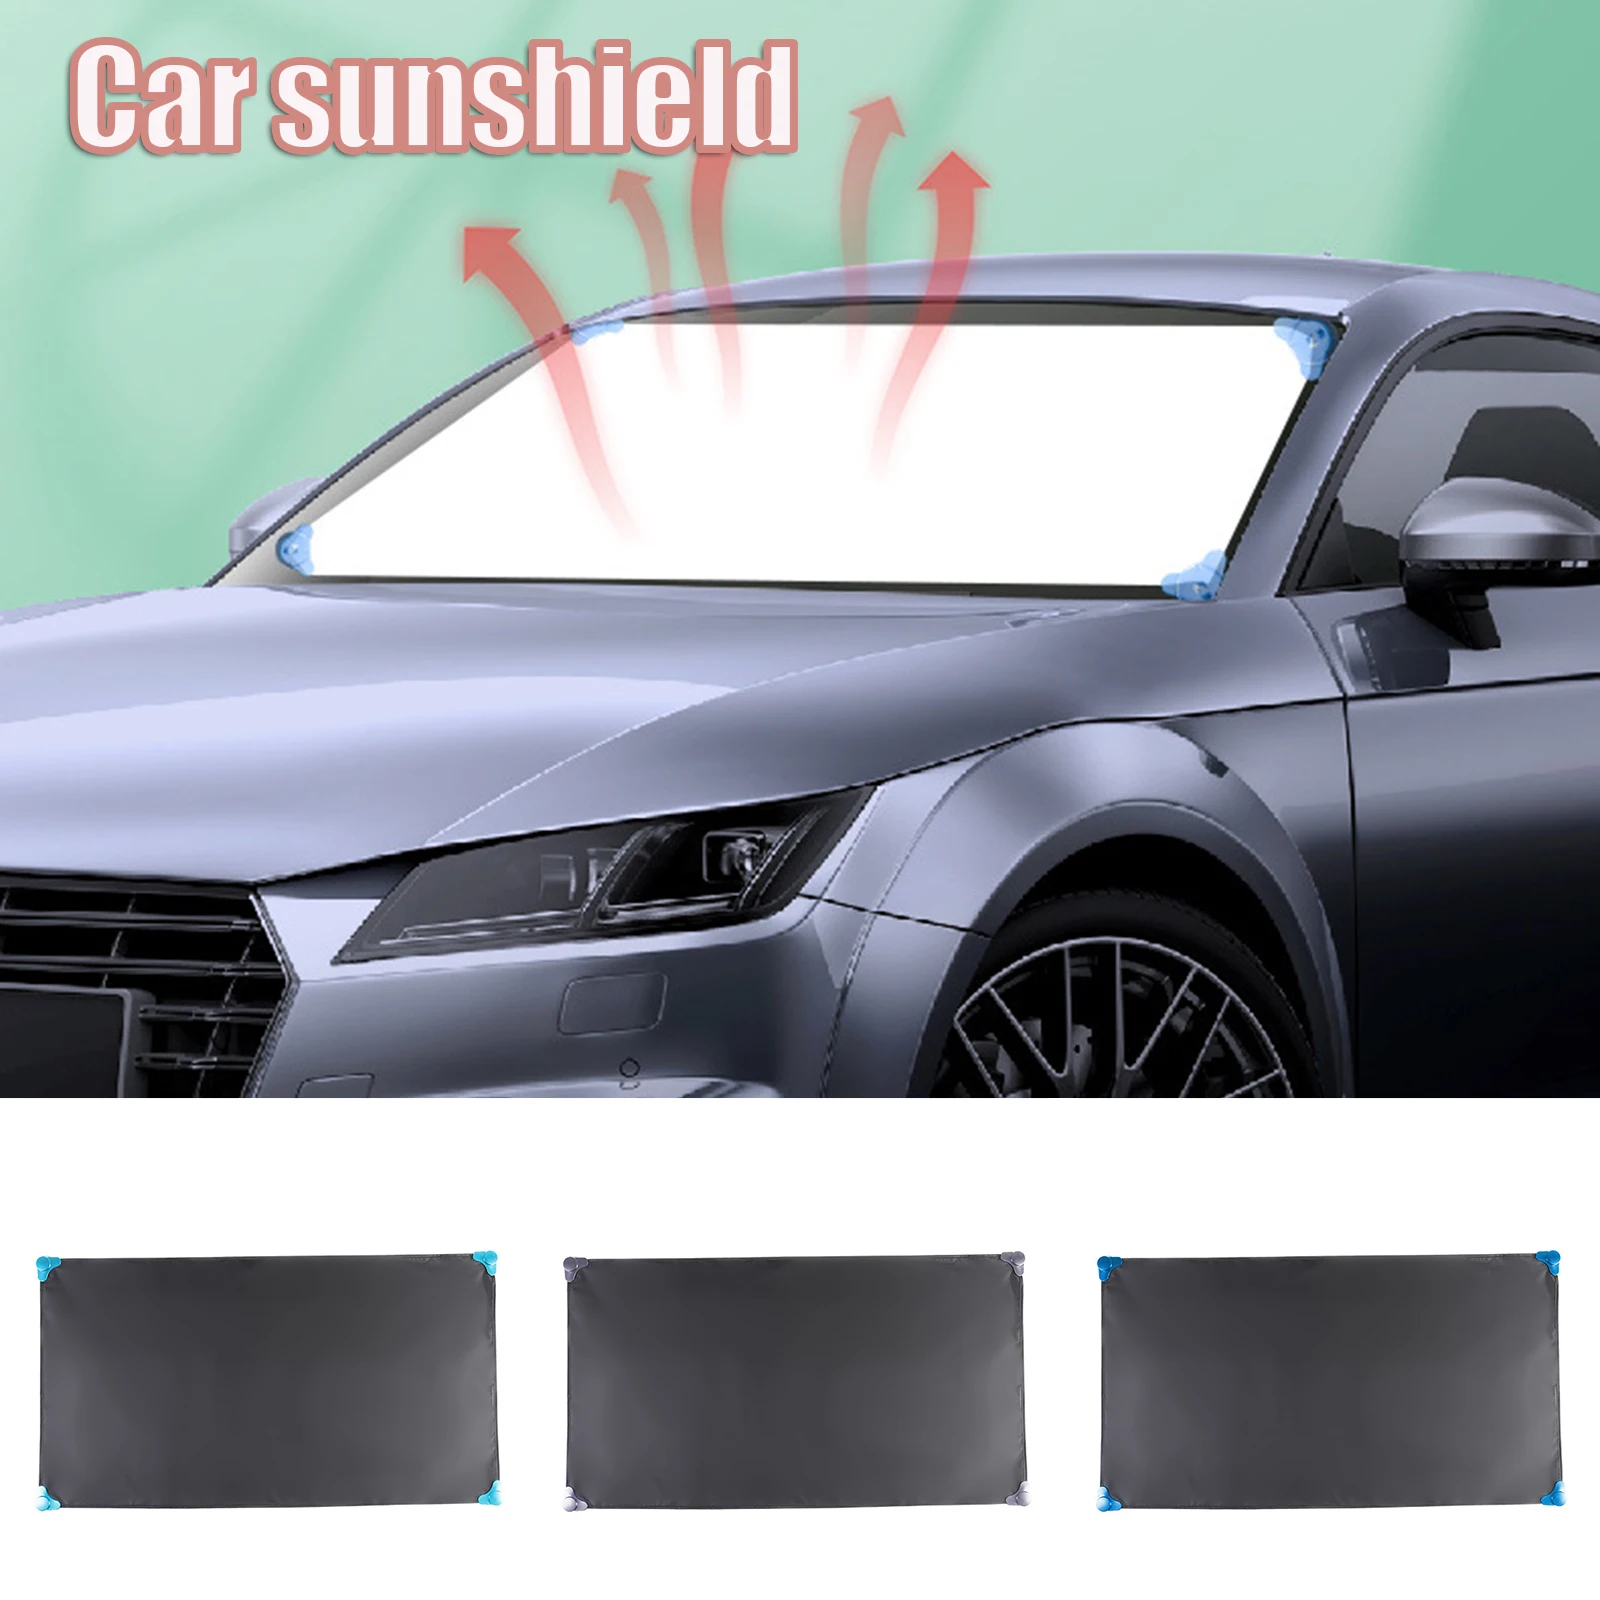 

2020 автомобильный солнцезащитный козырек для лобового стекла Солнцезащитная теплоизоляция и затенение ткань с присоской